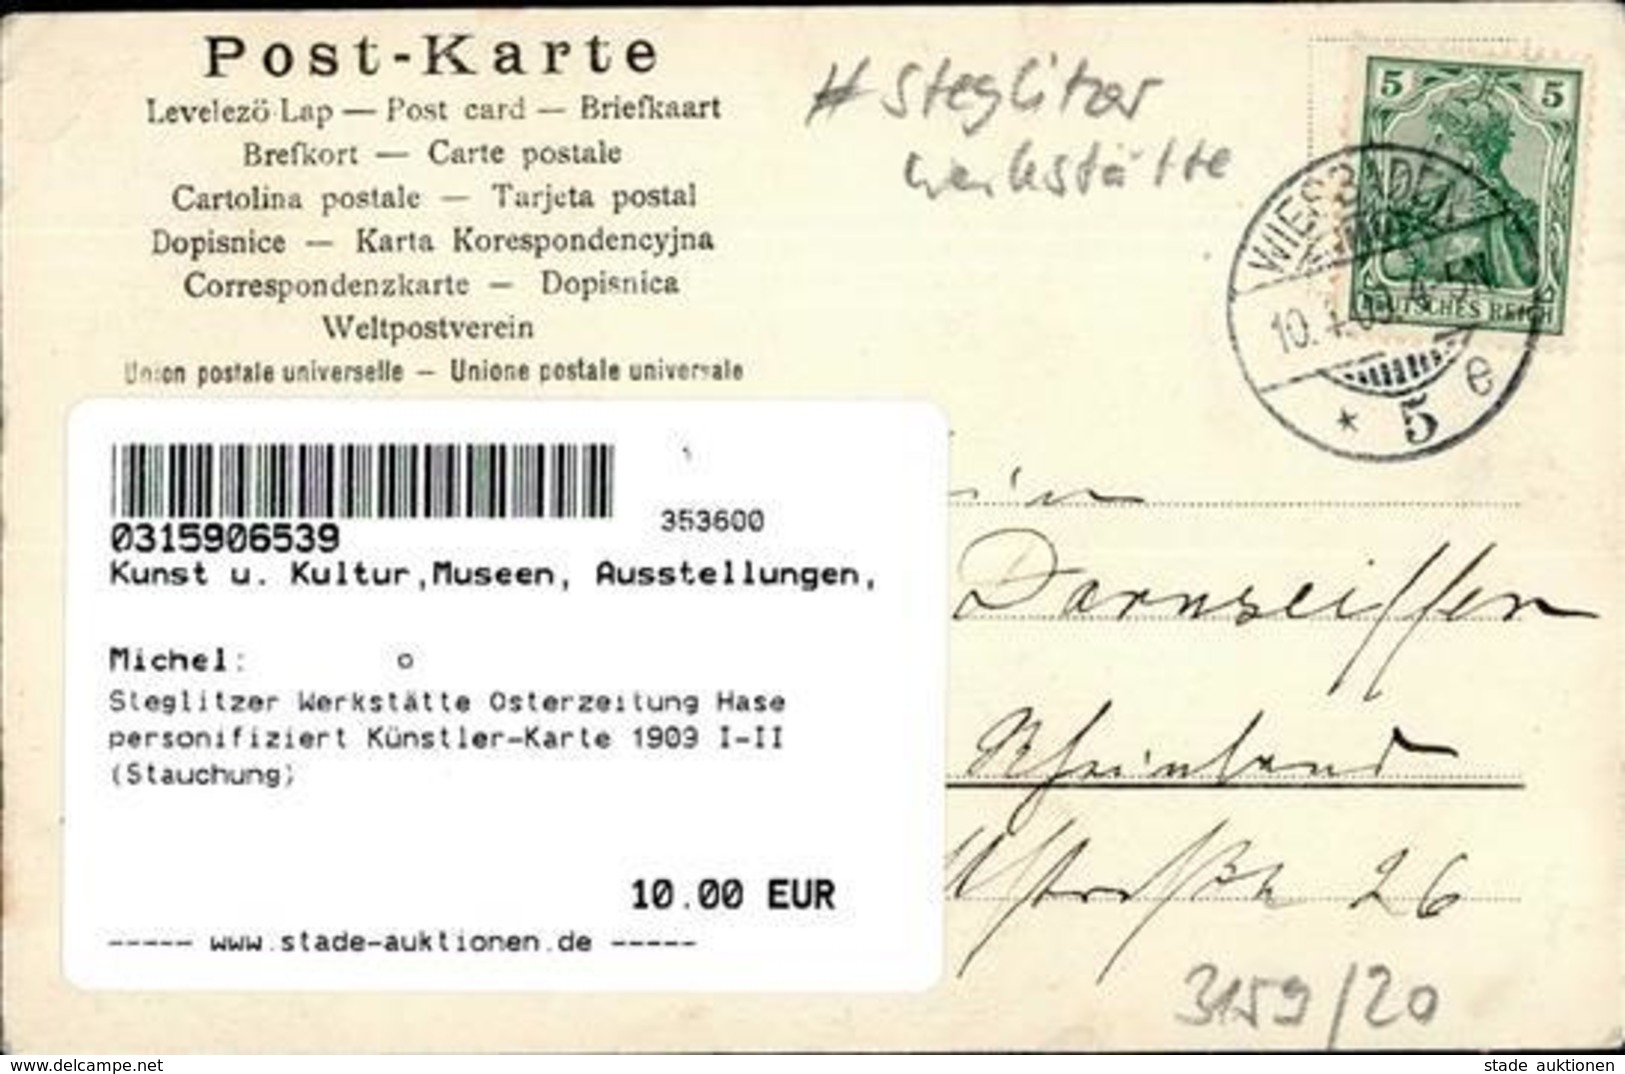 Steglitzer Werkstätte Osterzeitung Hase Personifiziert Künstler-Karte 1909 I-II (Stauchung) - Esposizioni